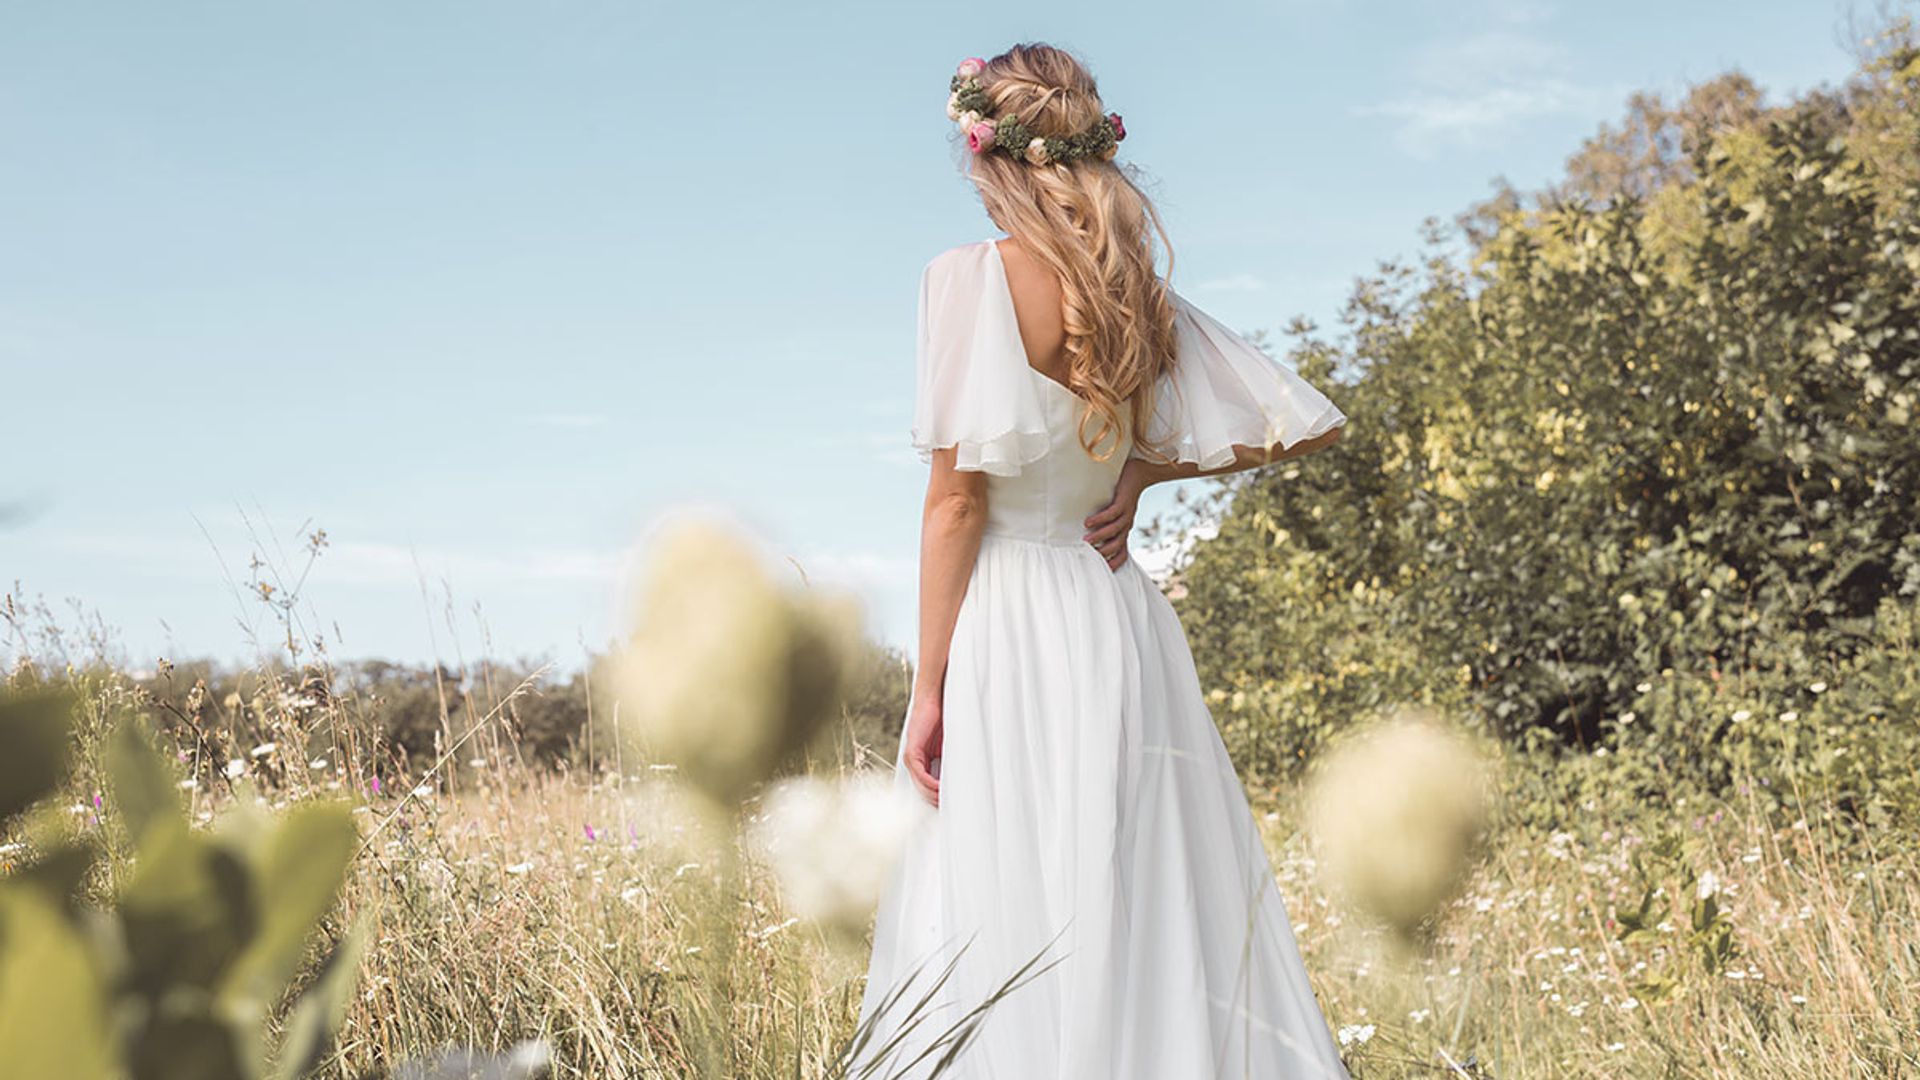 sustainable wedding dress